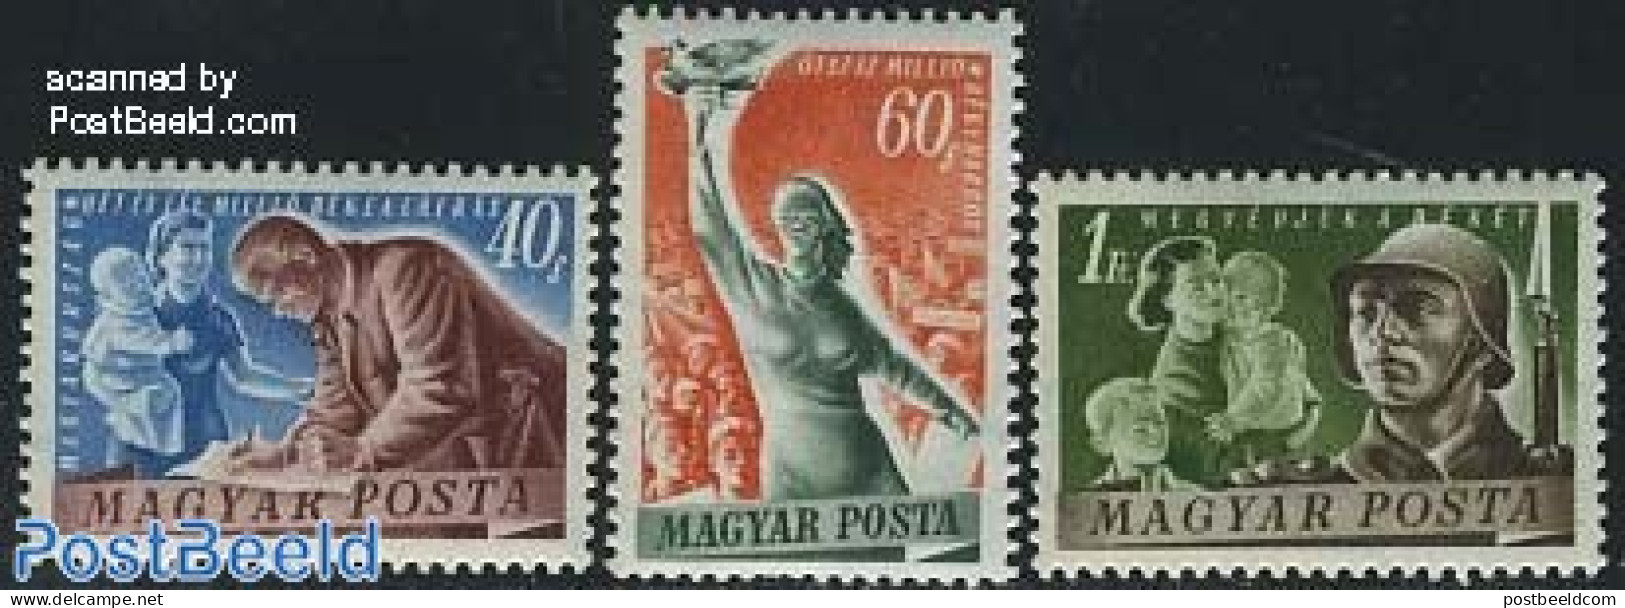 Hungary 1950 Peace 3v, Unused (hinged), History - Peace - Nuovi